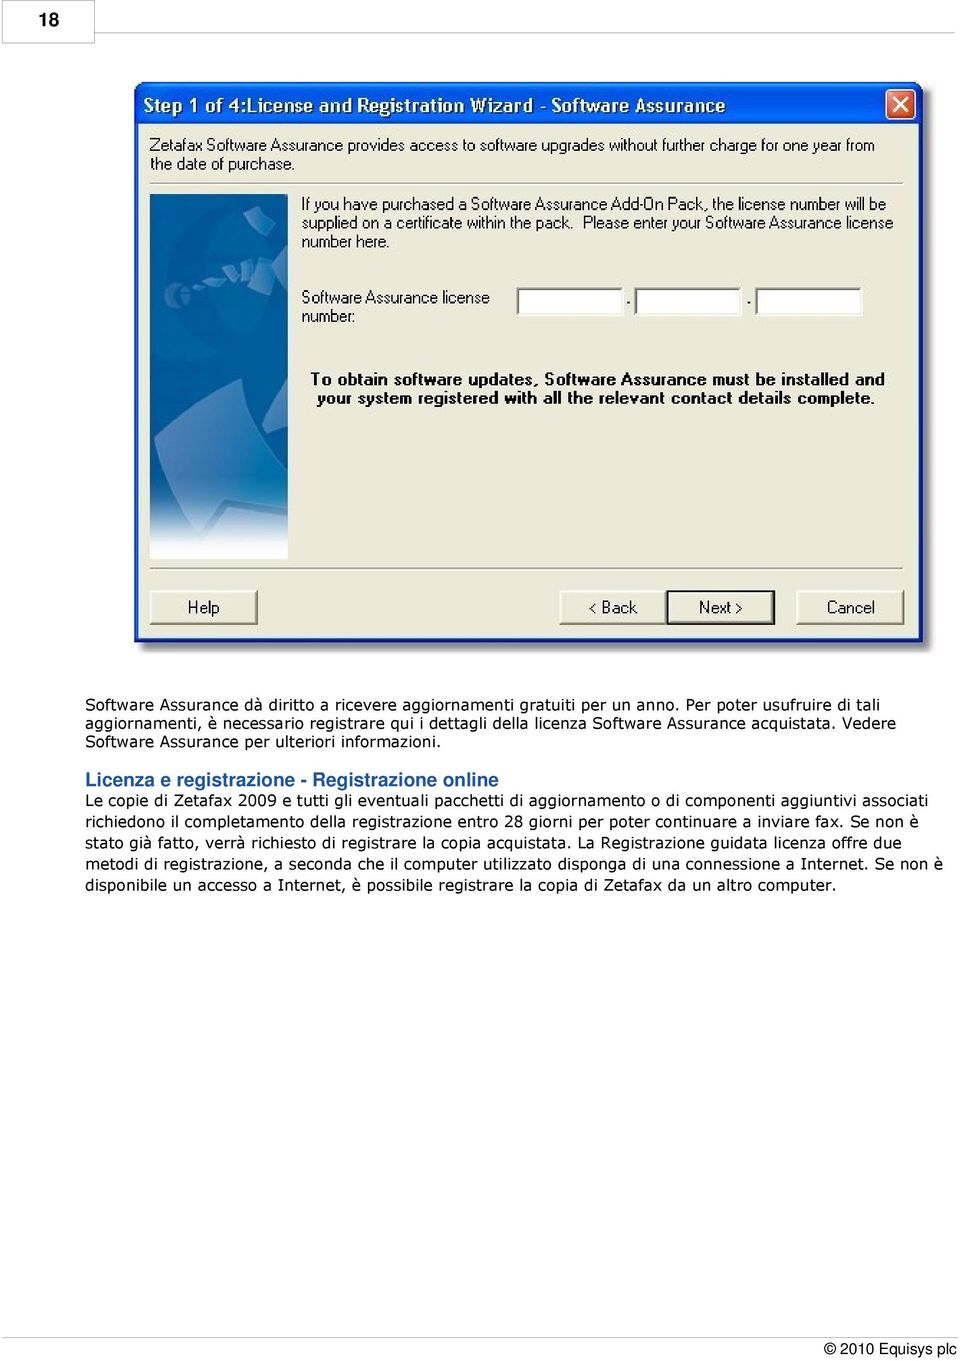 Licenza e registrazione - Registrazione online Le copie di Zetafax 2009 e tutti gli eventuali pacchetti di aggiornamento o di componenti aggiuntivi associati richiedono il completamento della